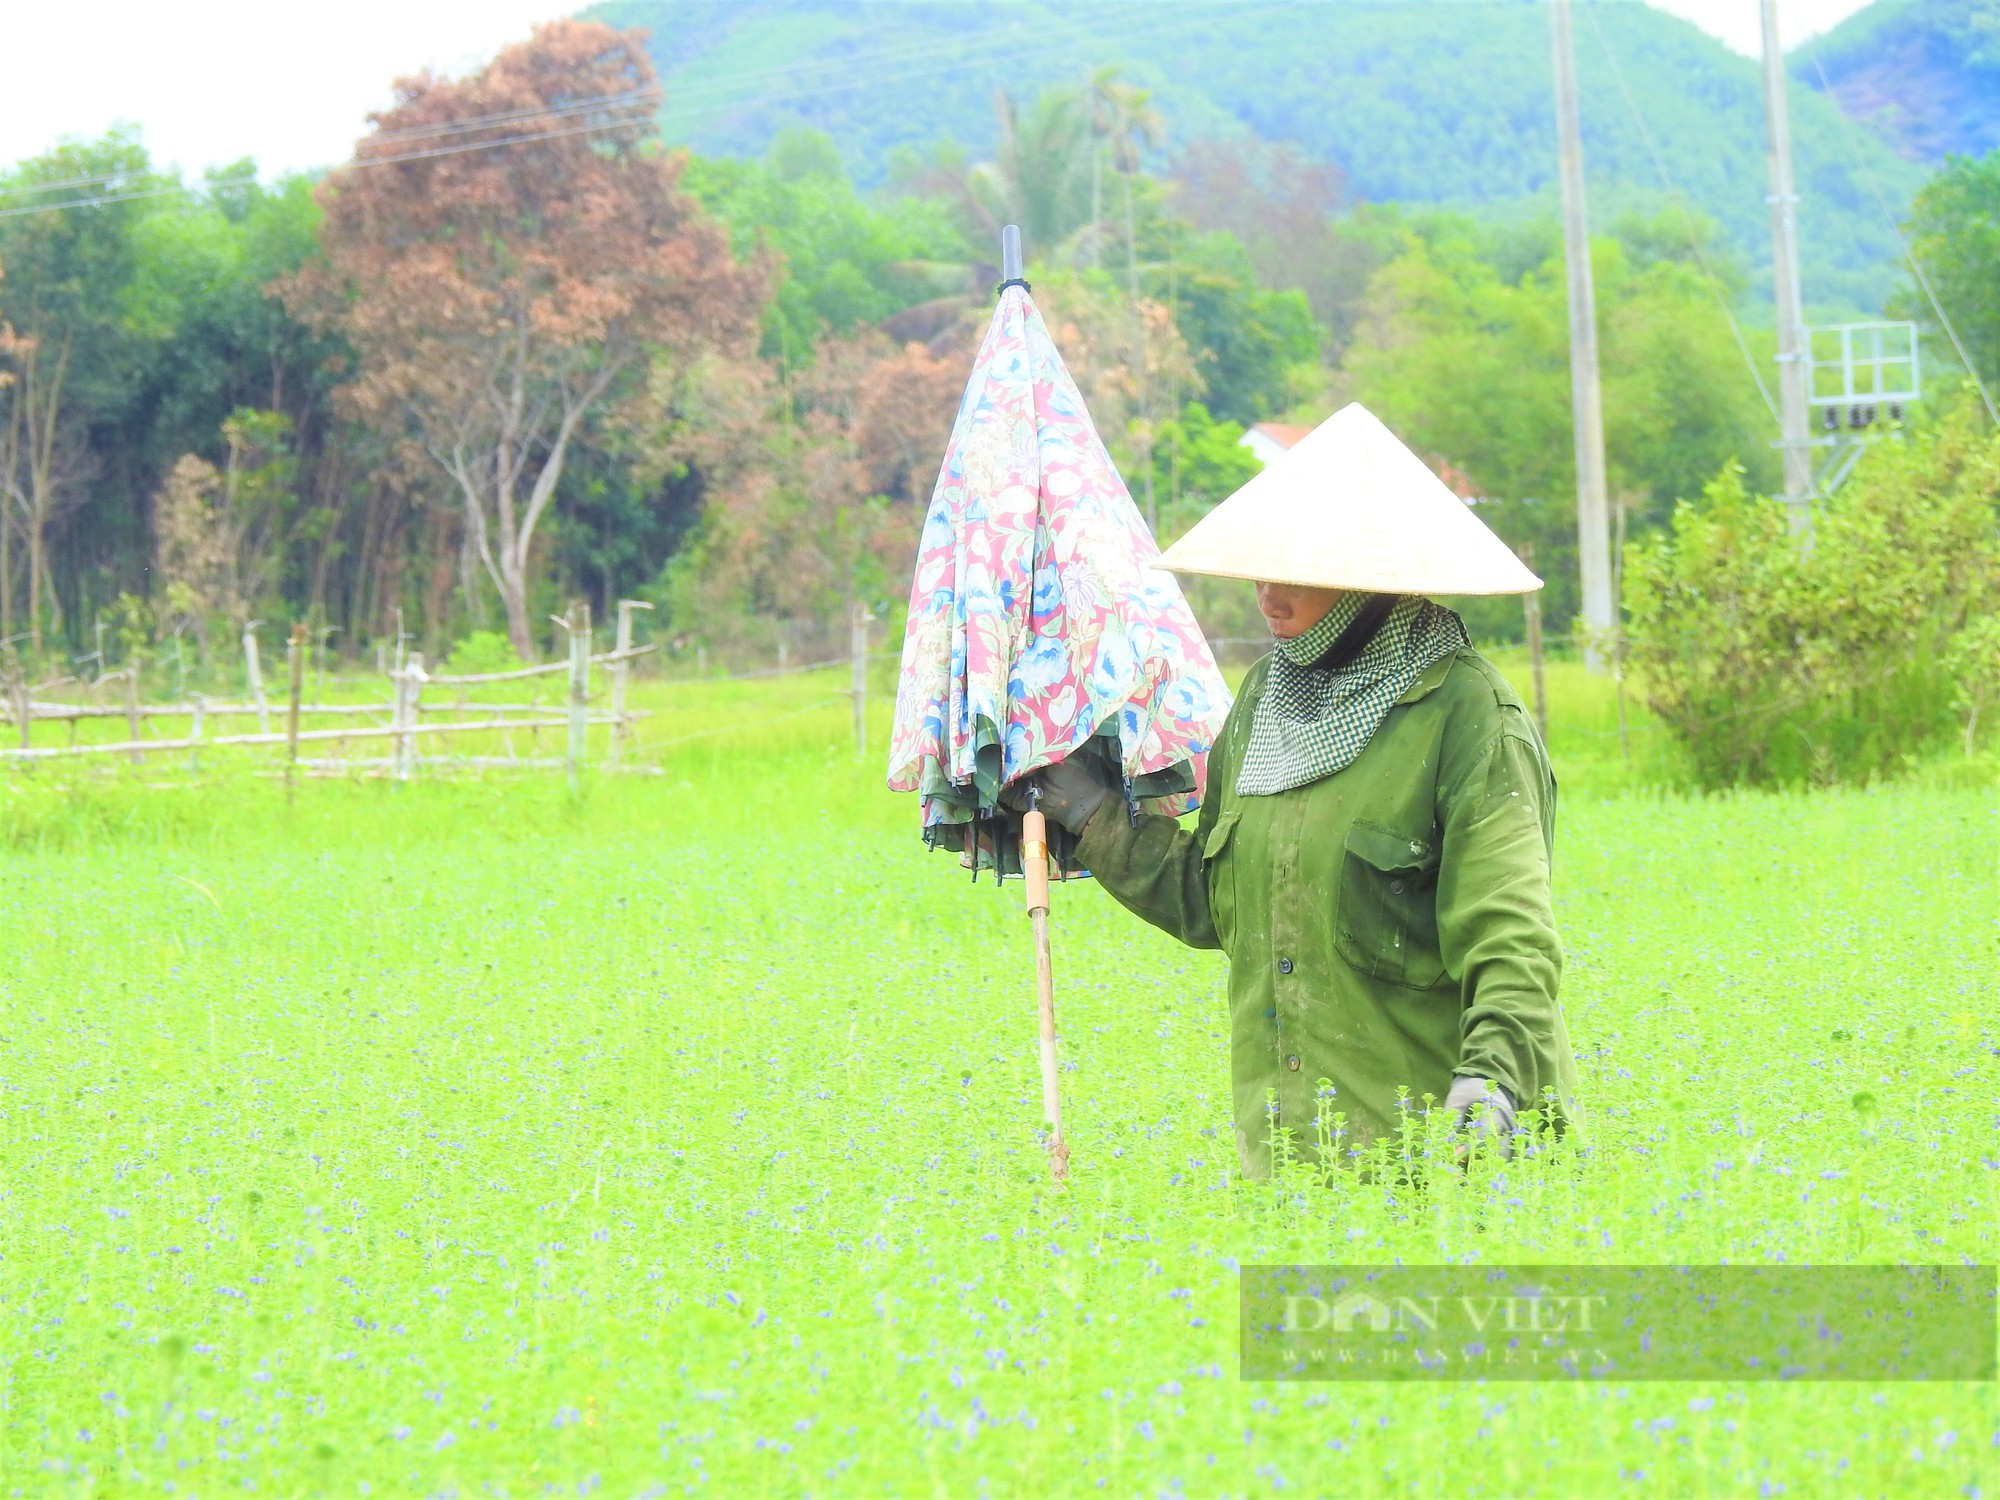 Sắc tím lãng mạn cánh đồng hoa nhân trần ở huyện Yên Thành (Nghệ An) - Ảnh 4.